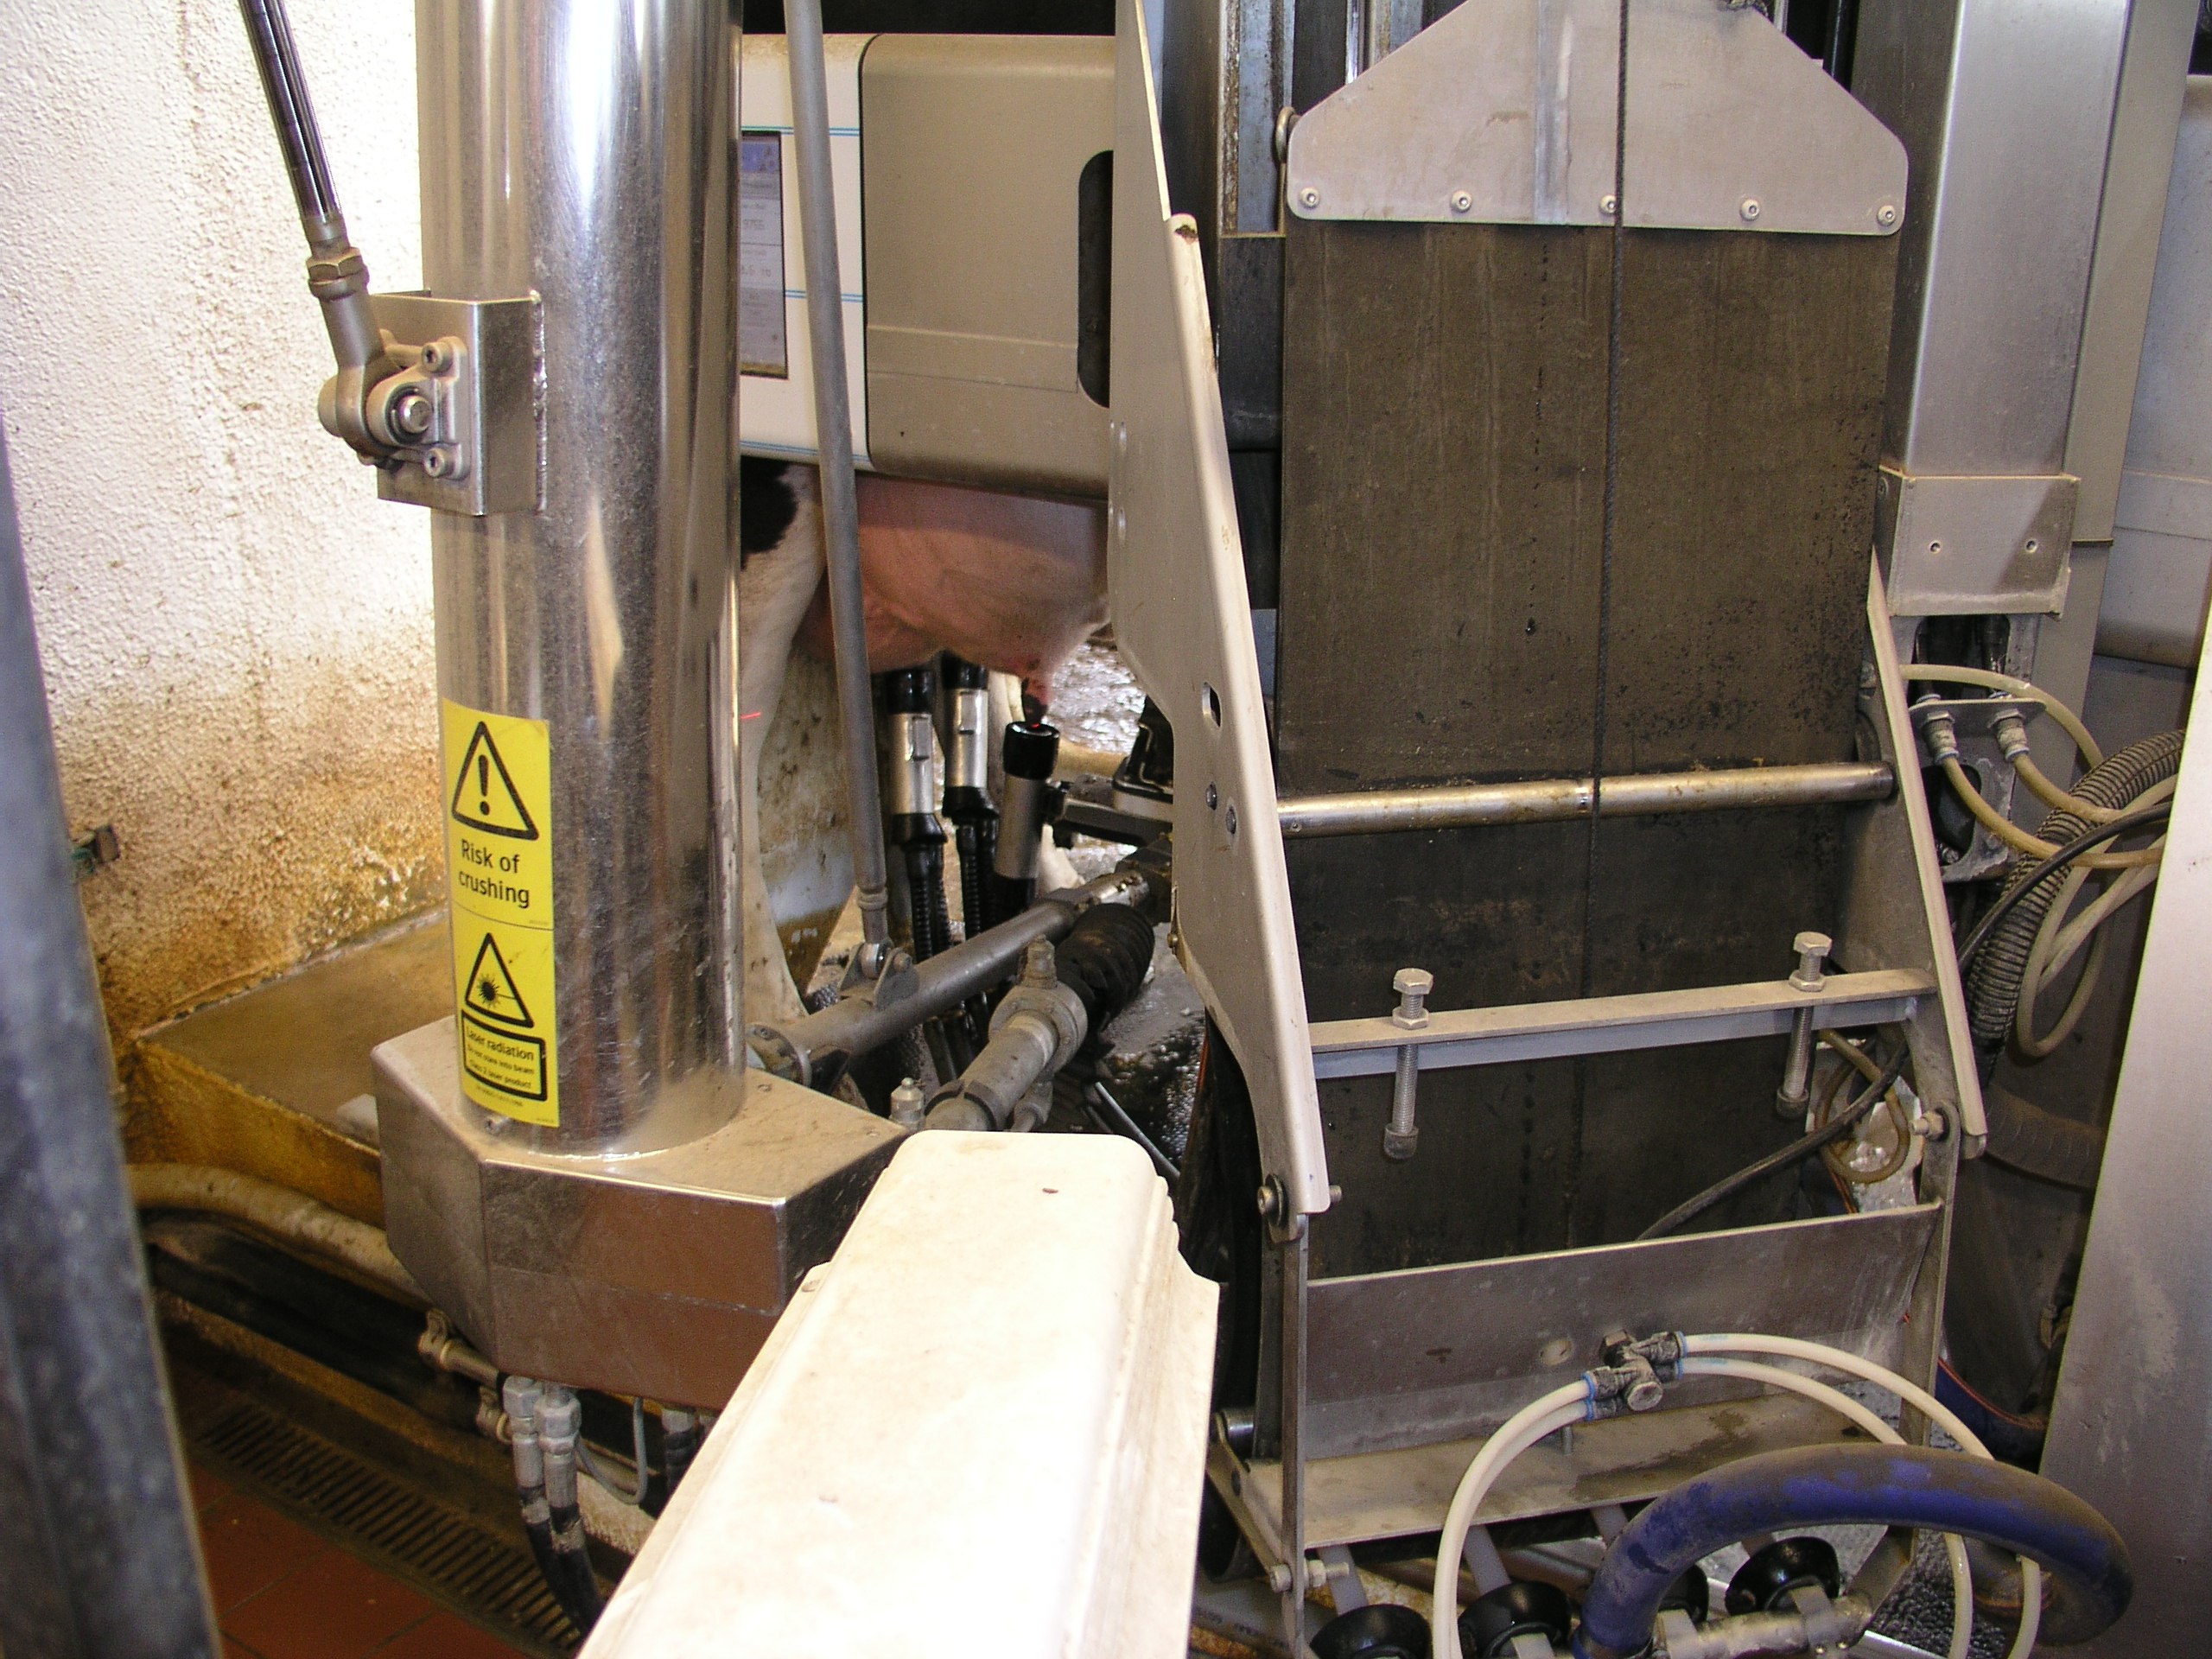 Robotic milker